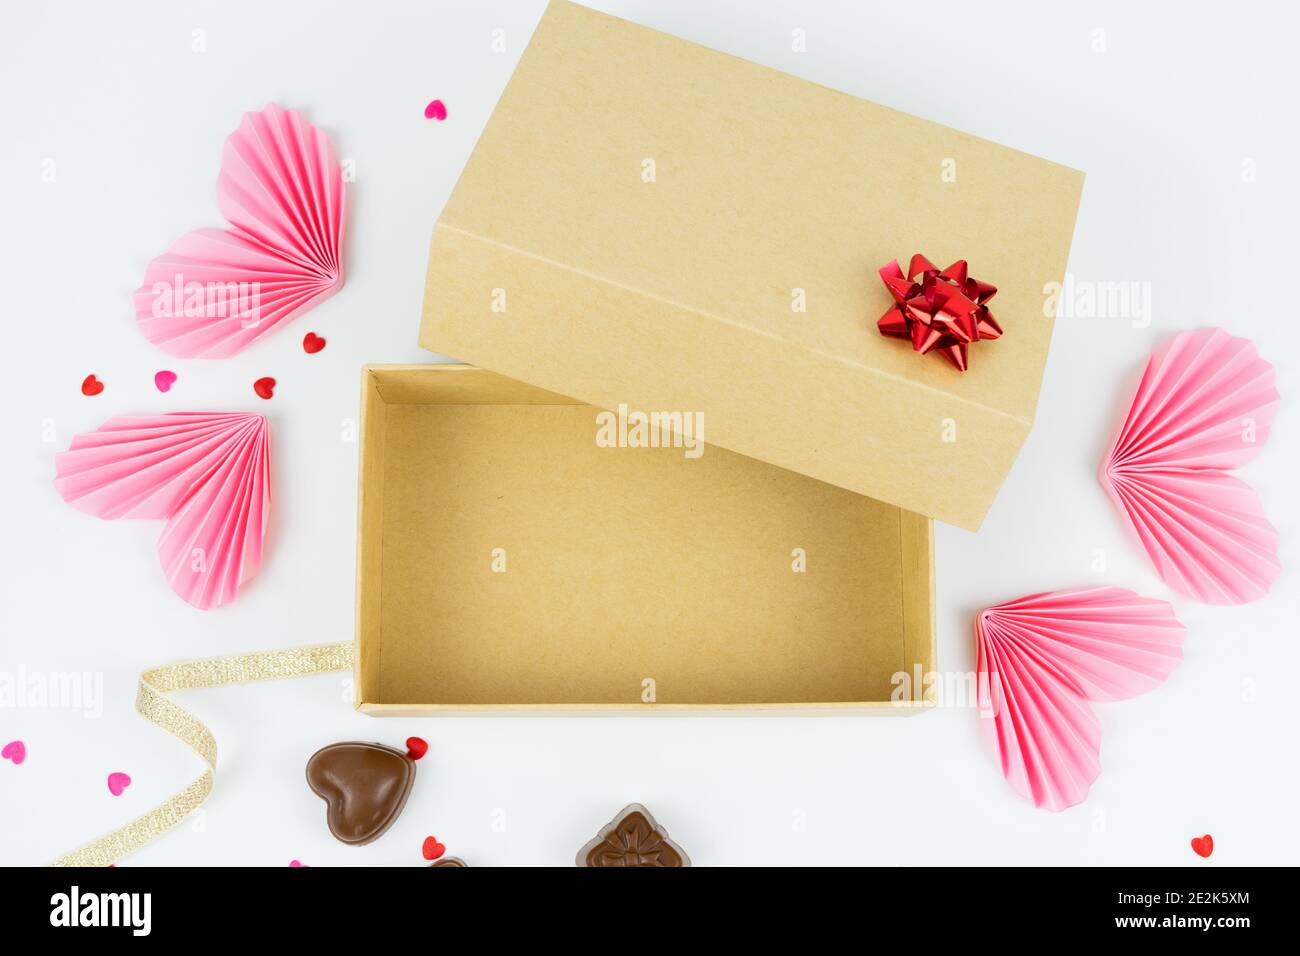 Caja de cartón abierta con adornos para el día de San Valentín,  aniversario, día de la madre y cumpleaños. Espacio libre para texto. Burla  Fotografía de stock - Alamy